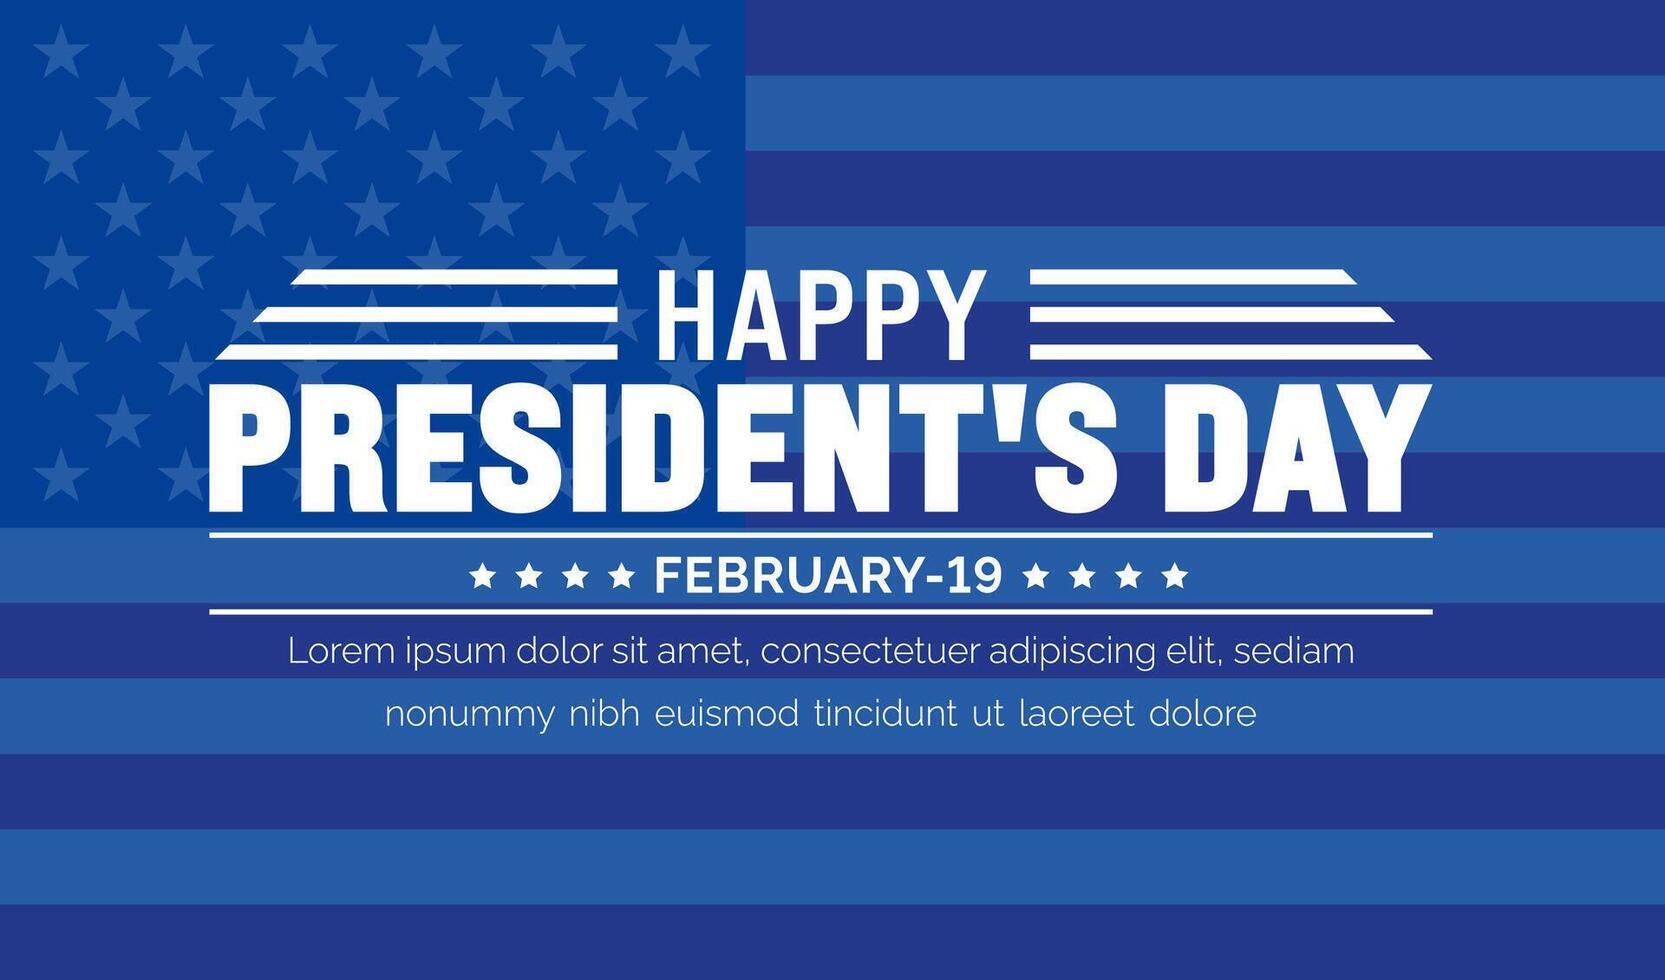 Februar 19 ist des Präsidenten Tag Hintergrund Vorlage mit USA Flagge Thema Konzept. Urlaub Konzept. amerikanisch Flagge Design Präsident Tag gefeiert auf das dritte Montag von Februar jeder Jahr. vektor